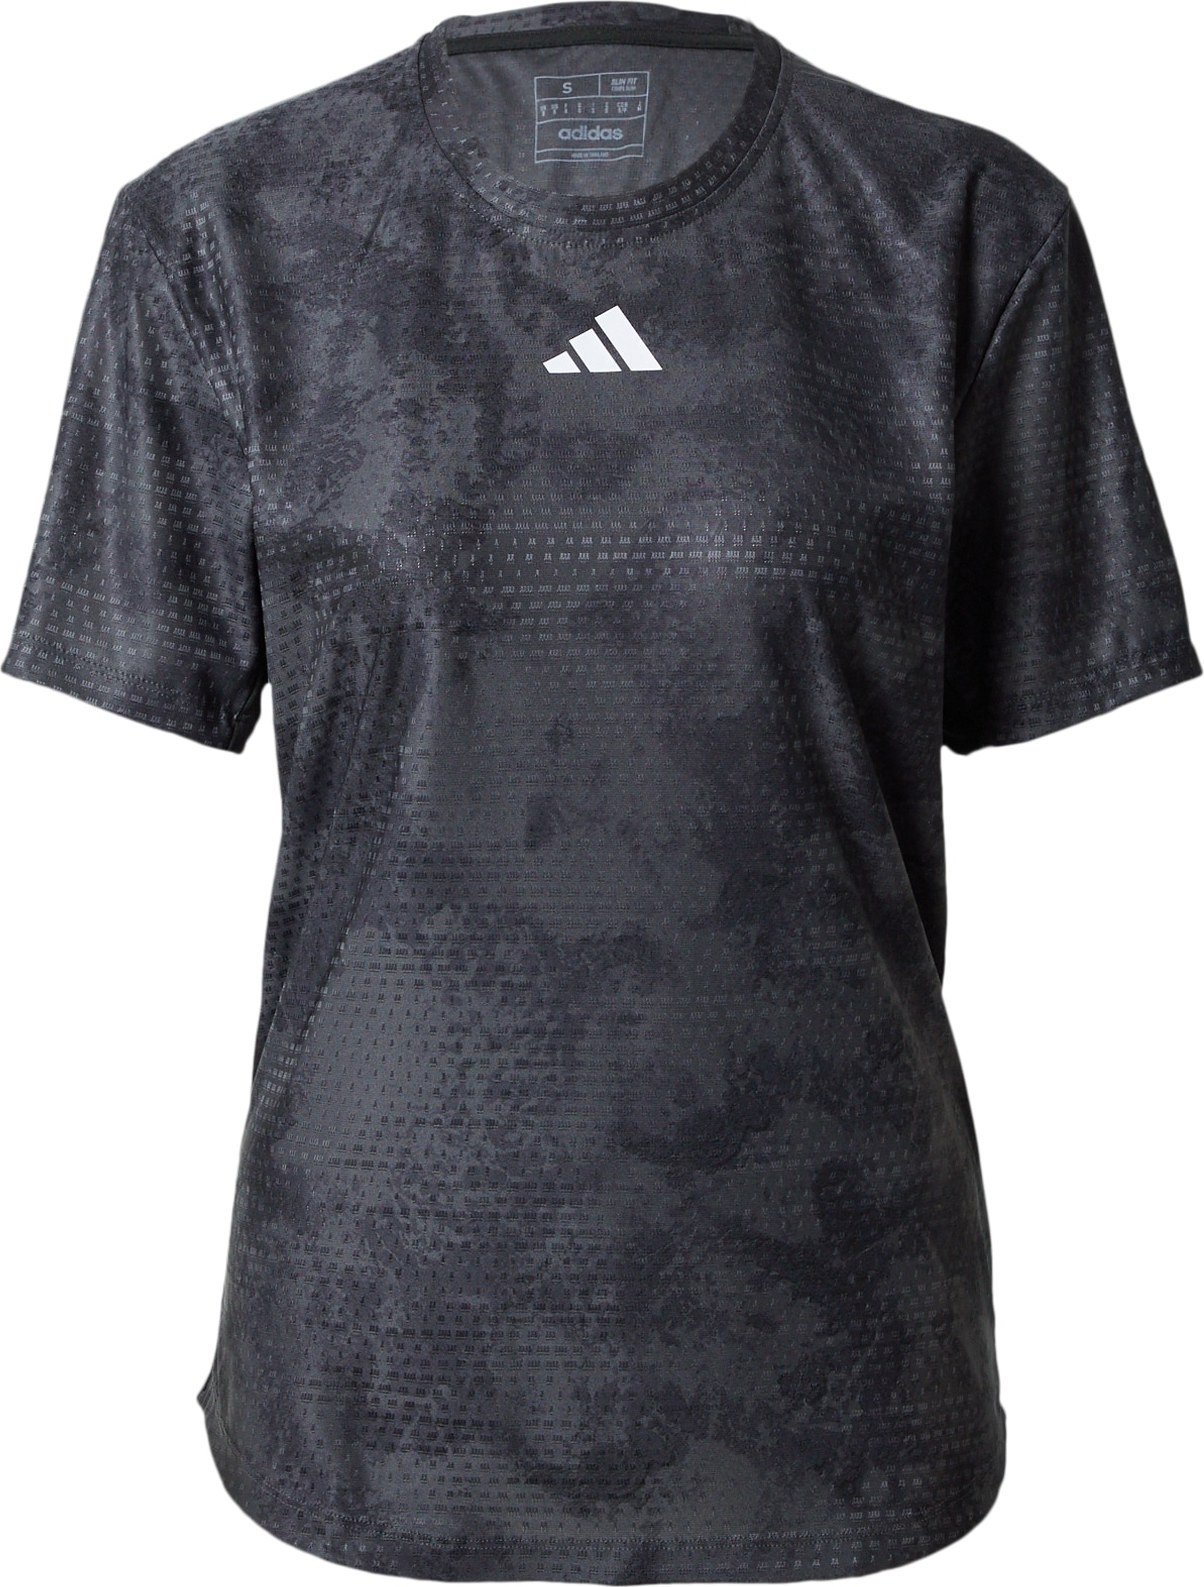 ADIDAS PERFORMANCE Funkční tričko 'Paris' tmavě šedá / černá / bílá